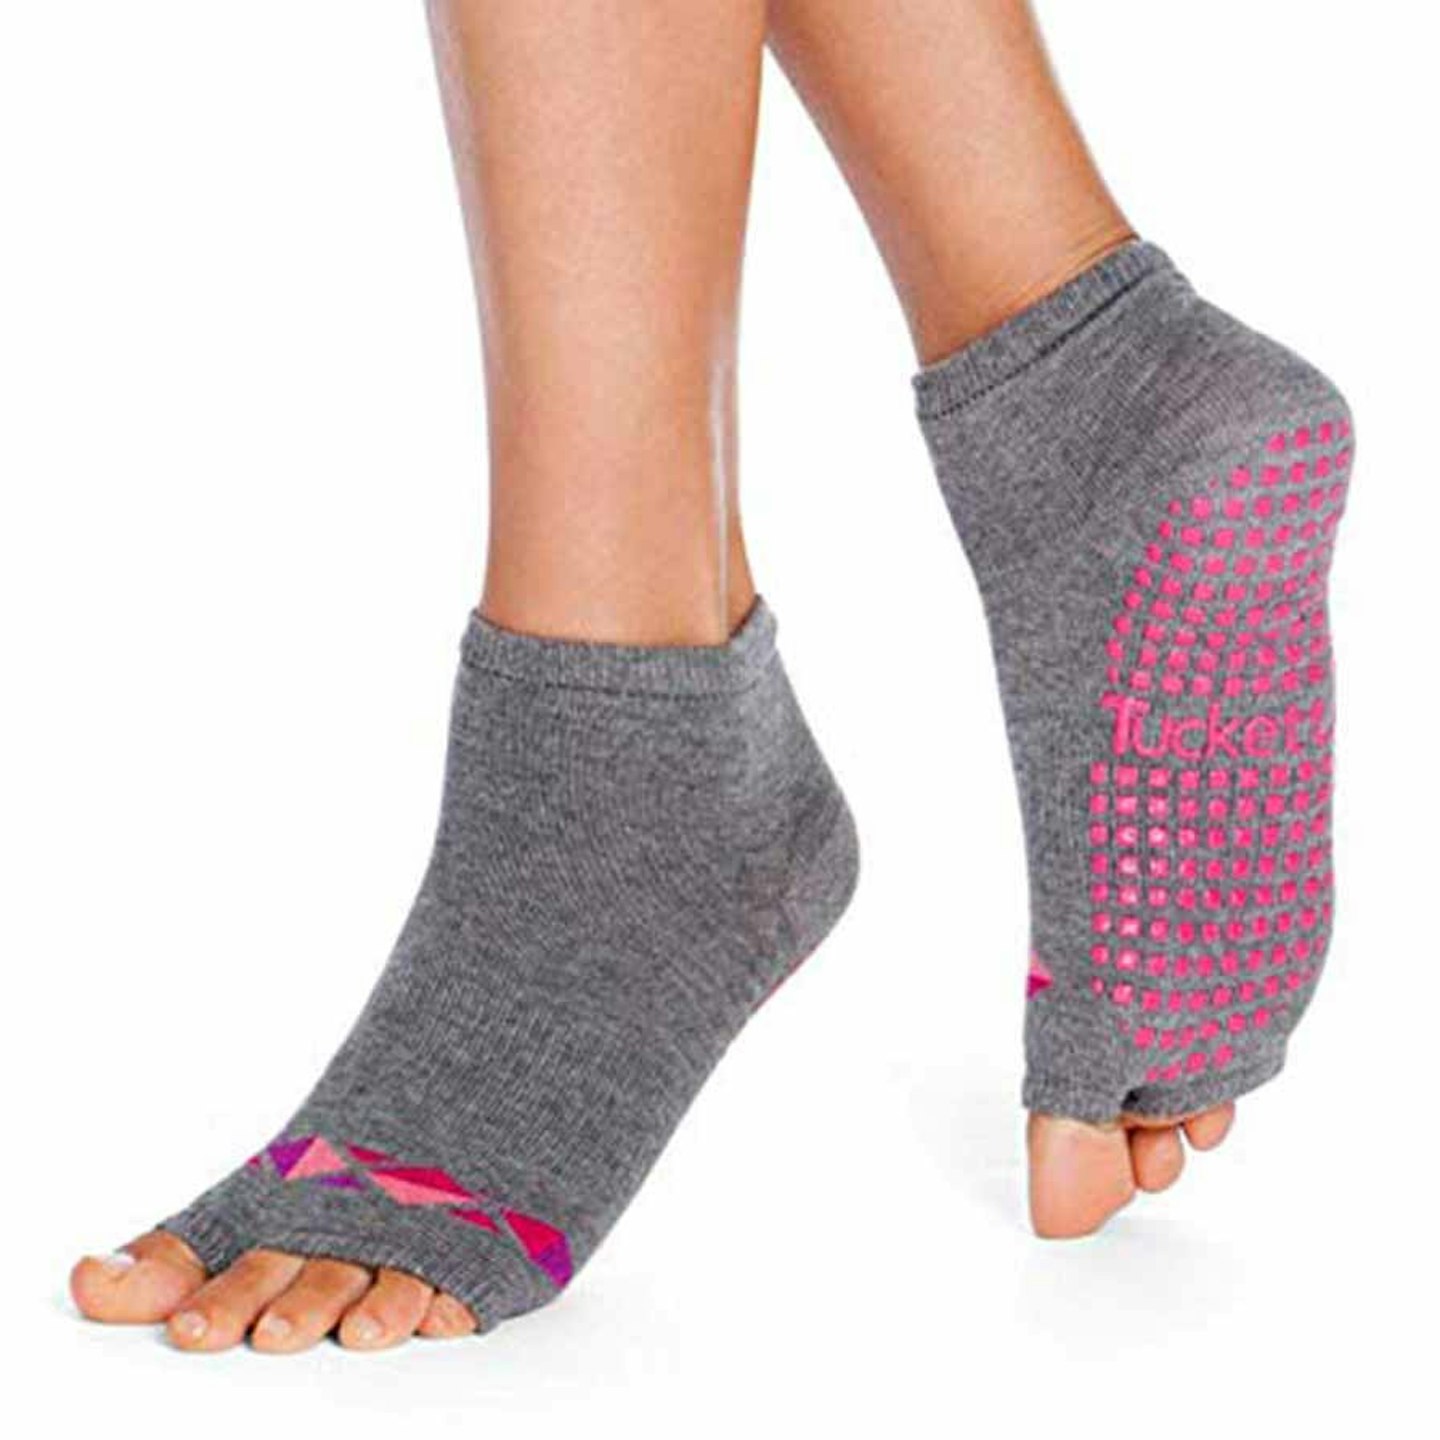 Tucketts yoga socks